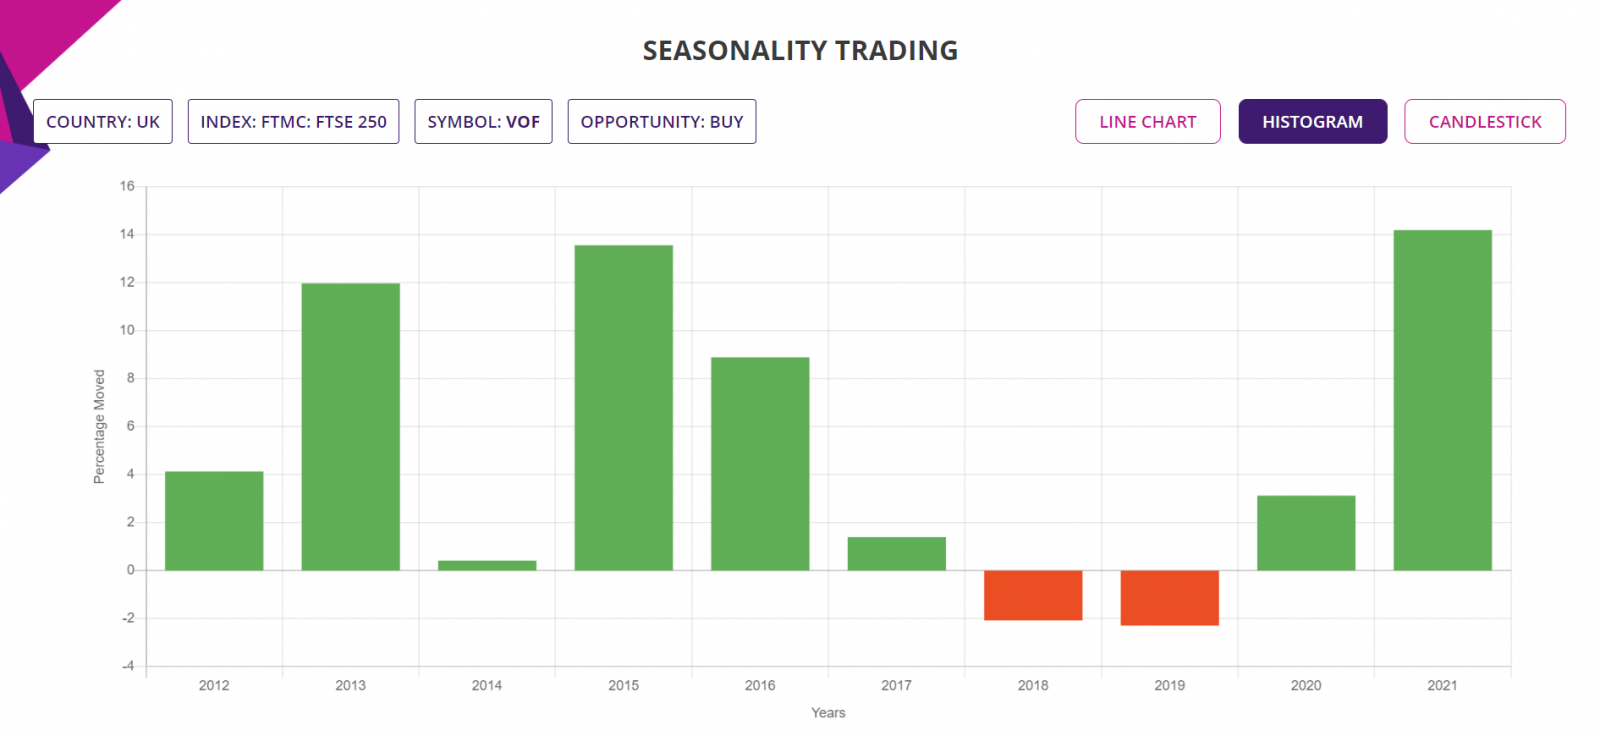 Seasoonality trading staretgy, detailed report histogram, UK stocks